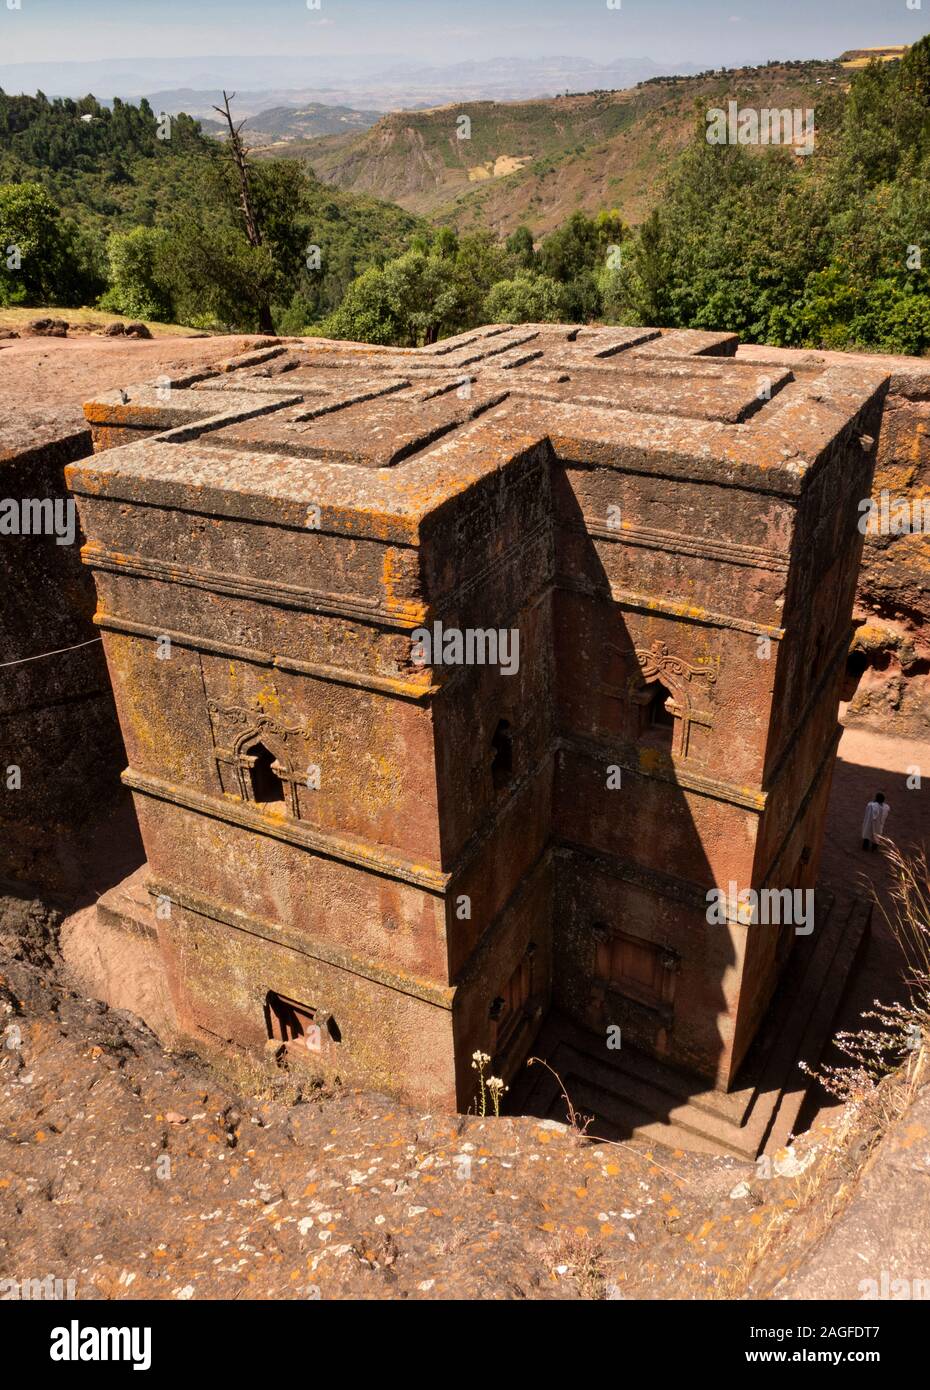 Etiopía, la región de Amhara, Lalibela, Bet Giyorgis, St George's Lailibela descubierto sólo la iglesia roca cortada Foto de stock